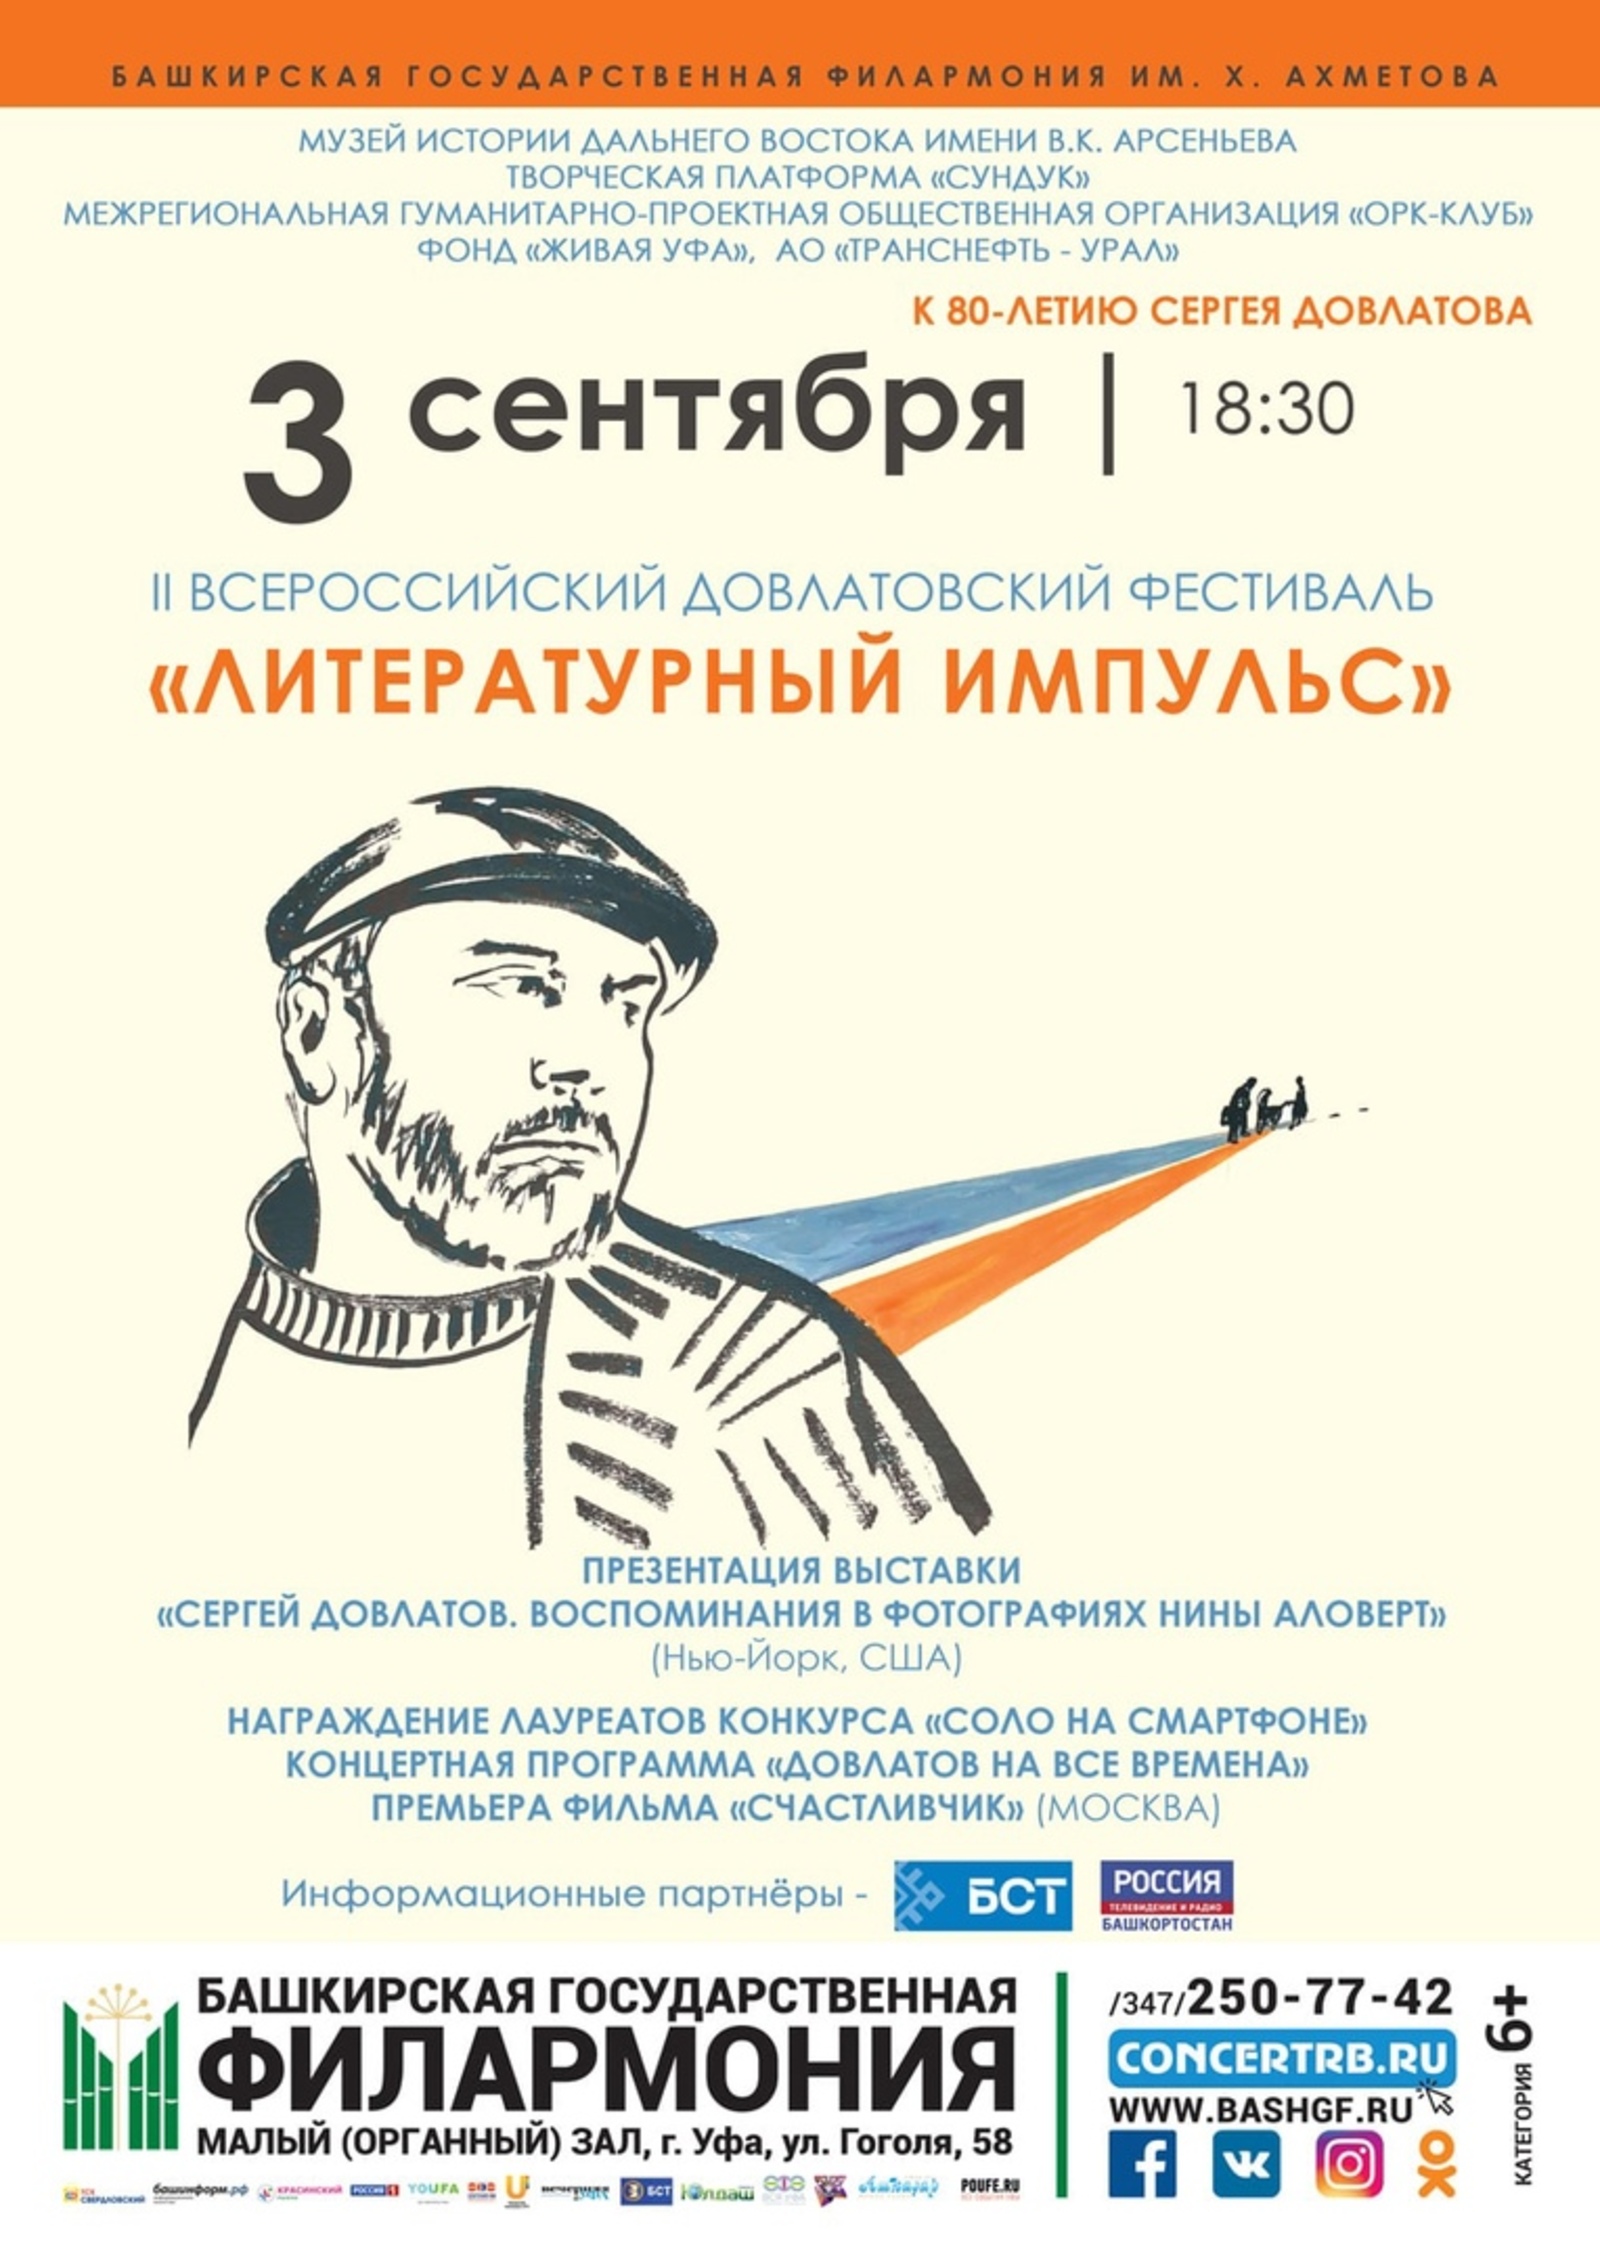 В Уфе состоится II Всероссийский Довлатовский фестиваль